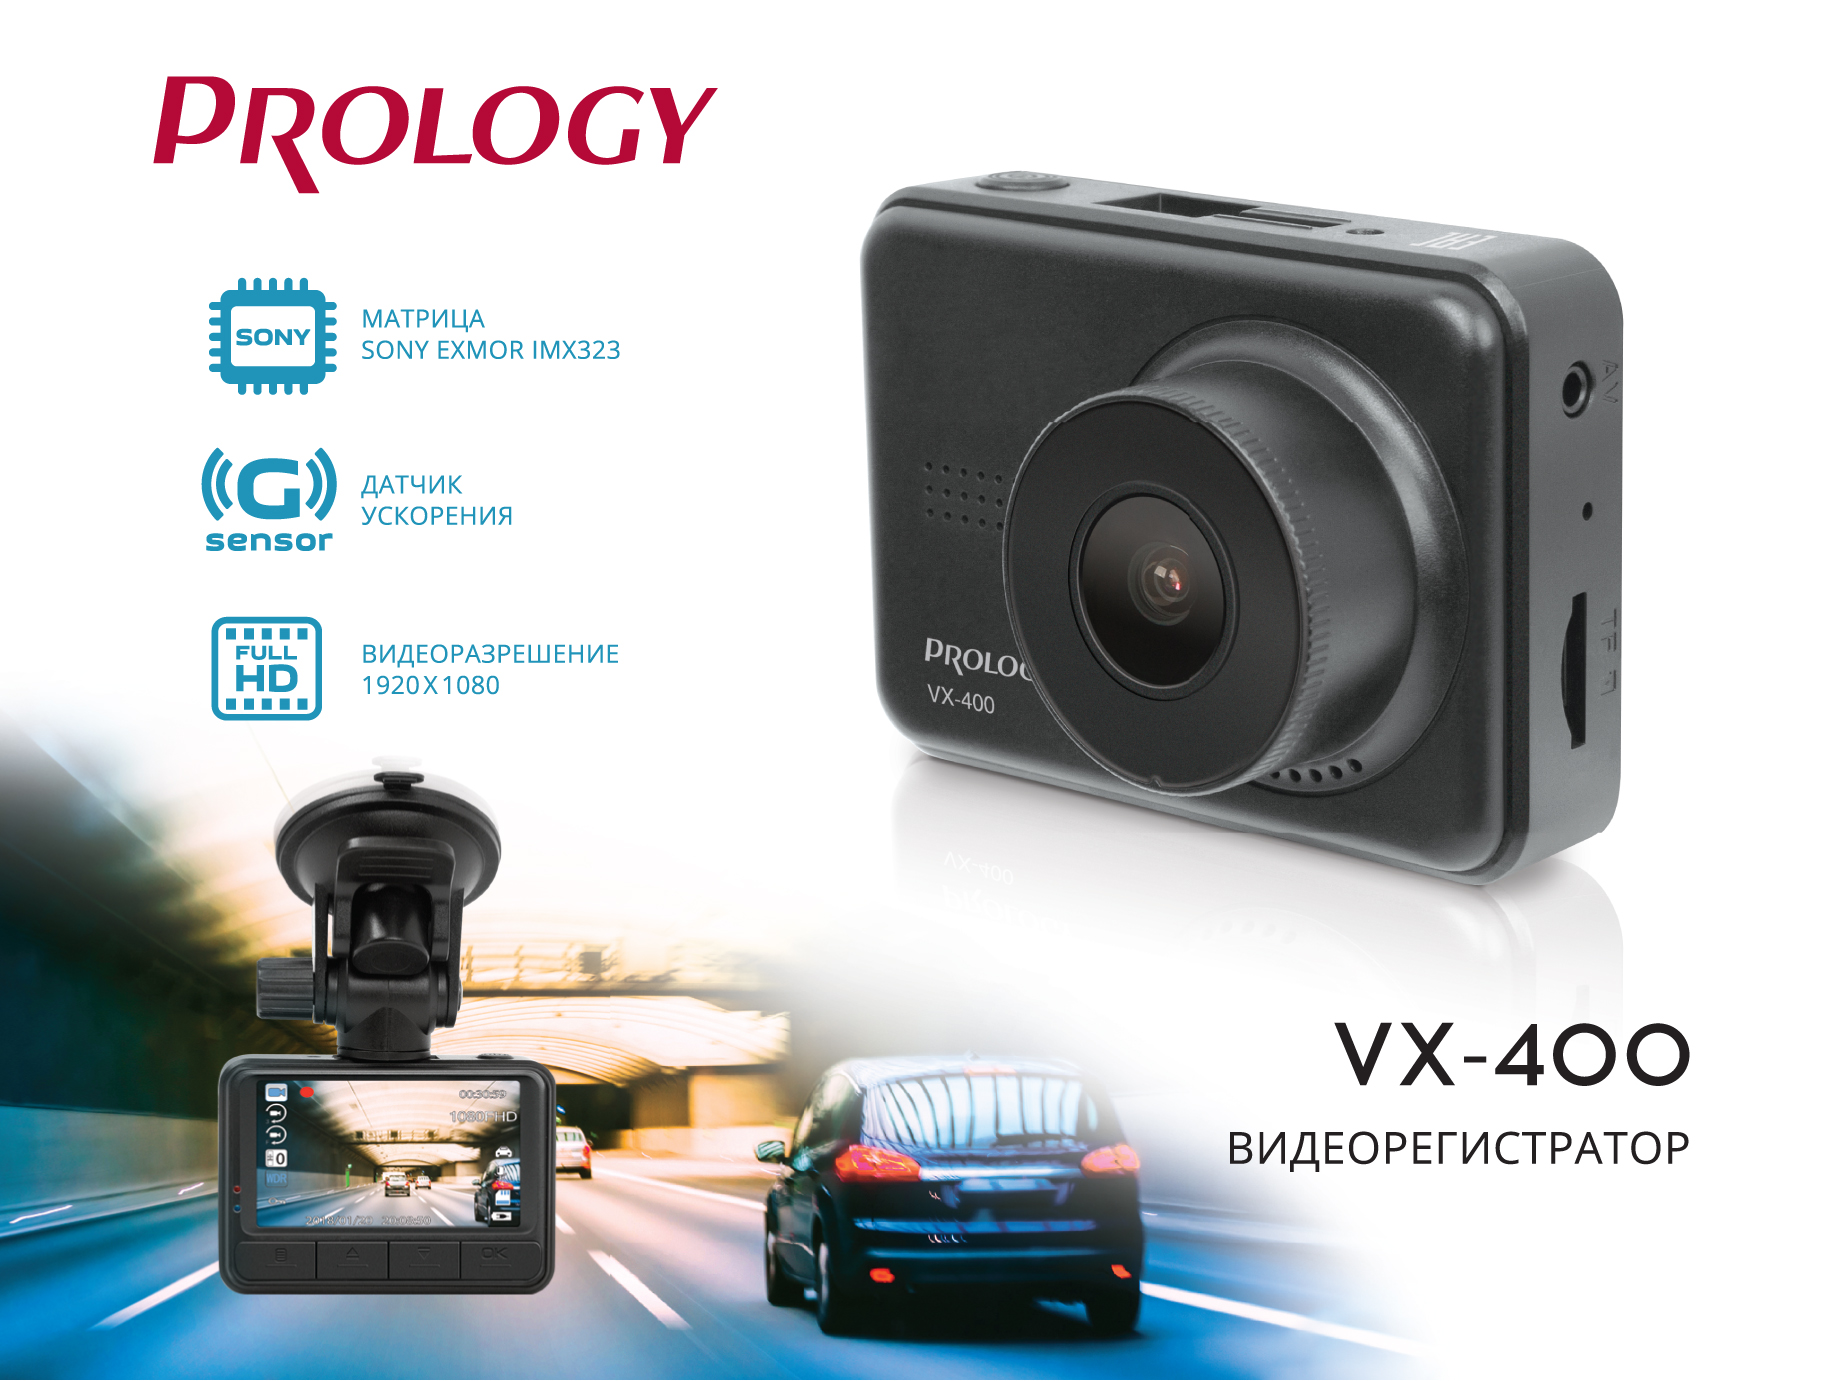 Встречайте новинку - видеорегистратор Prology VX-400. Матрица камеры Sony и два кронштейна в комплекте!